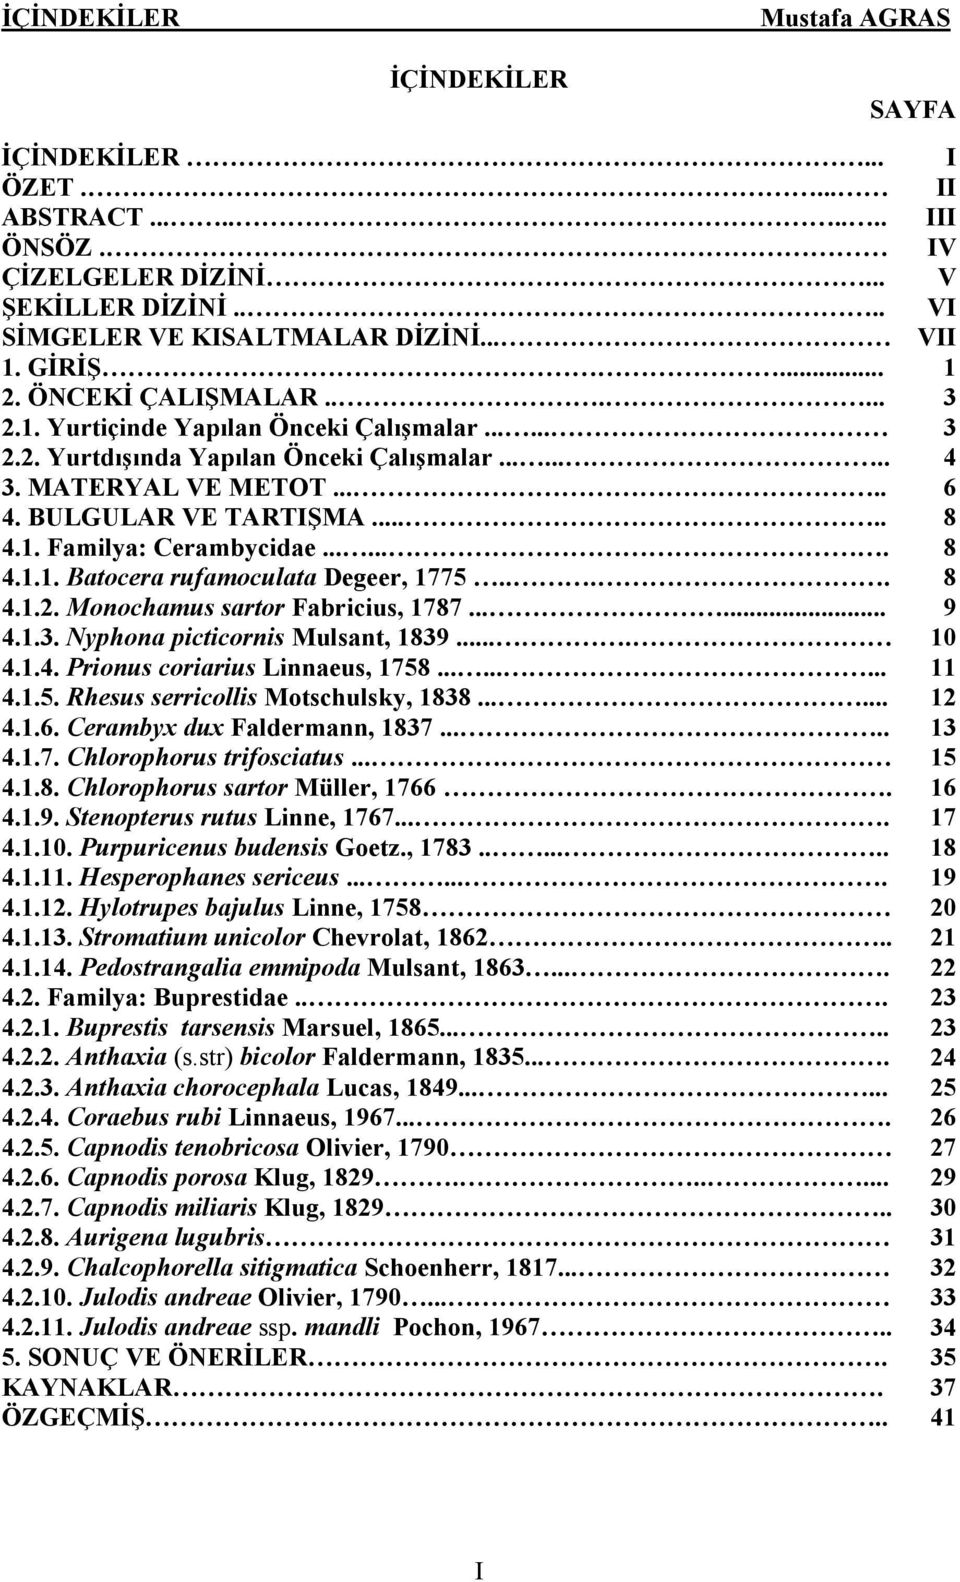 ...... 8 4.1.1. Batocera rufamoculata Degeer, 1775.... 8 4.1.2. Monochamus sartor Fabricius, 1787...... 9 4.1.3. Nyphona picticornis Mulsant, 1839.... 10 4.1.4. Prionus coriarius Linnaeus, 1758......... 11 4.